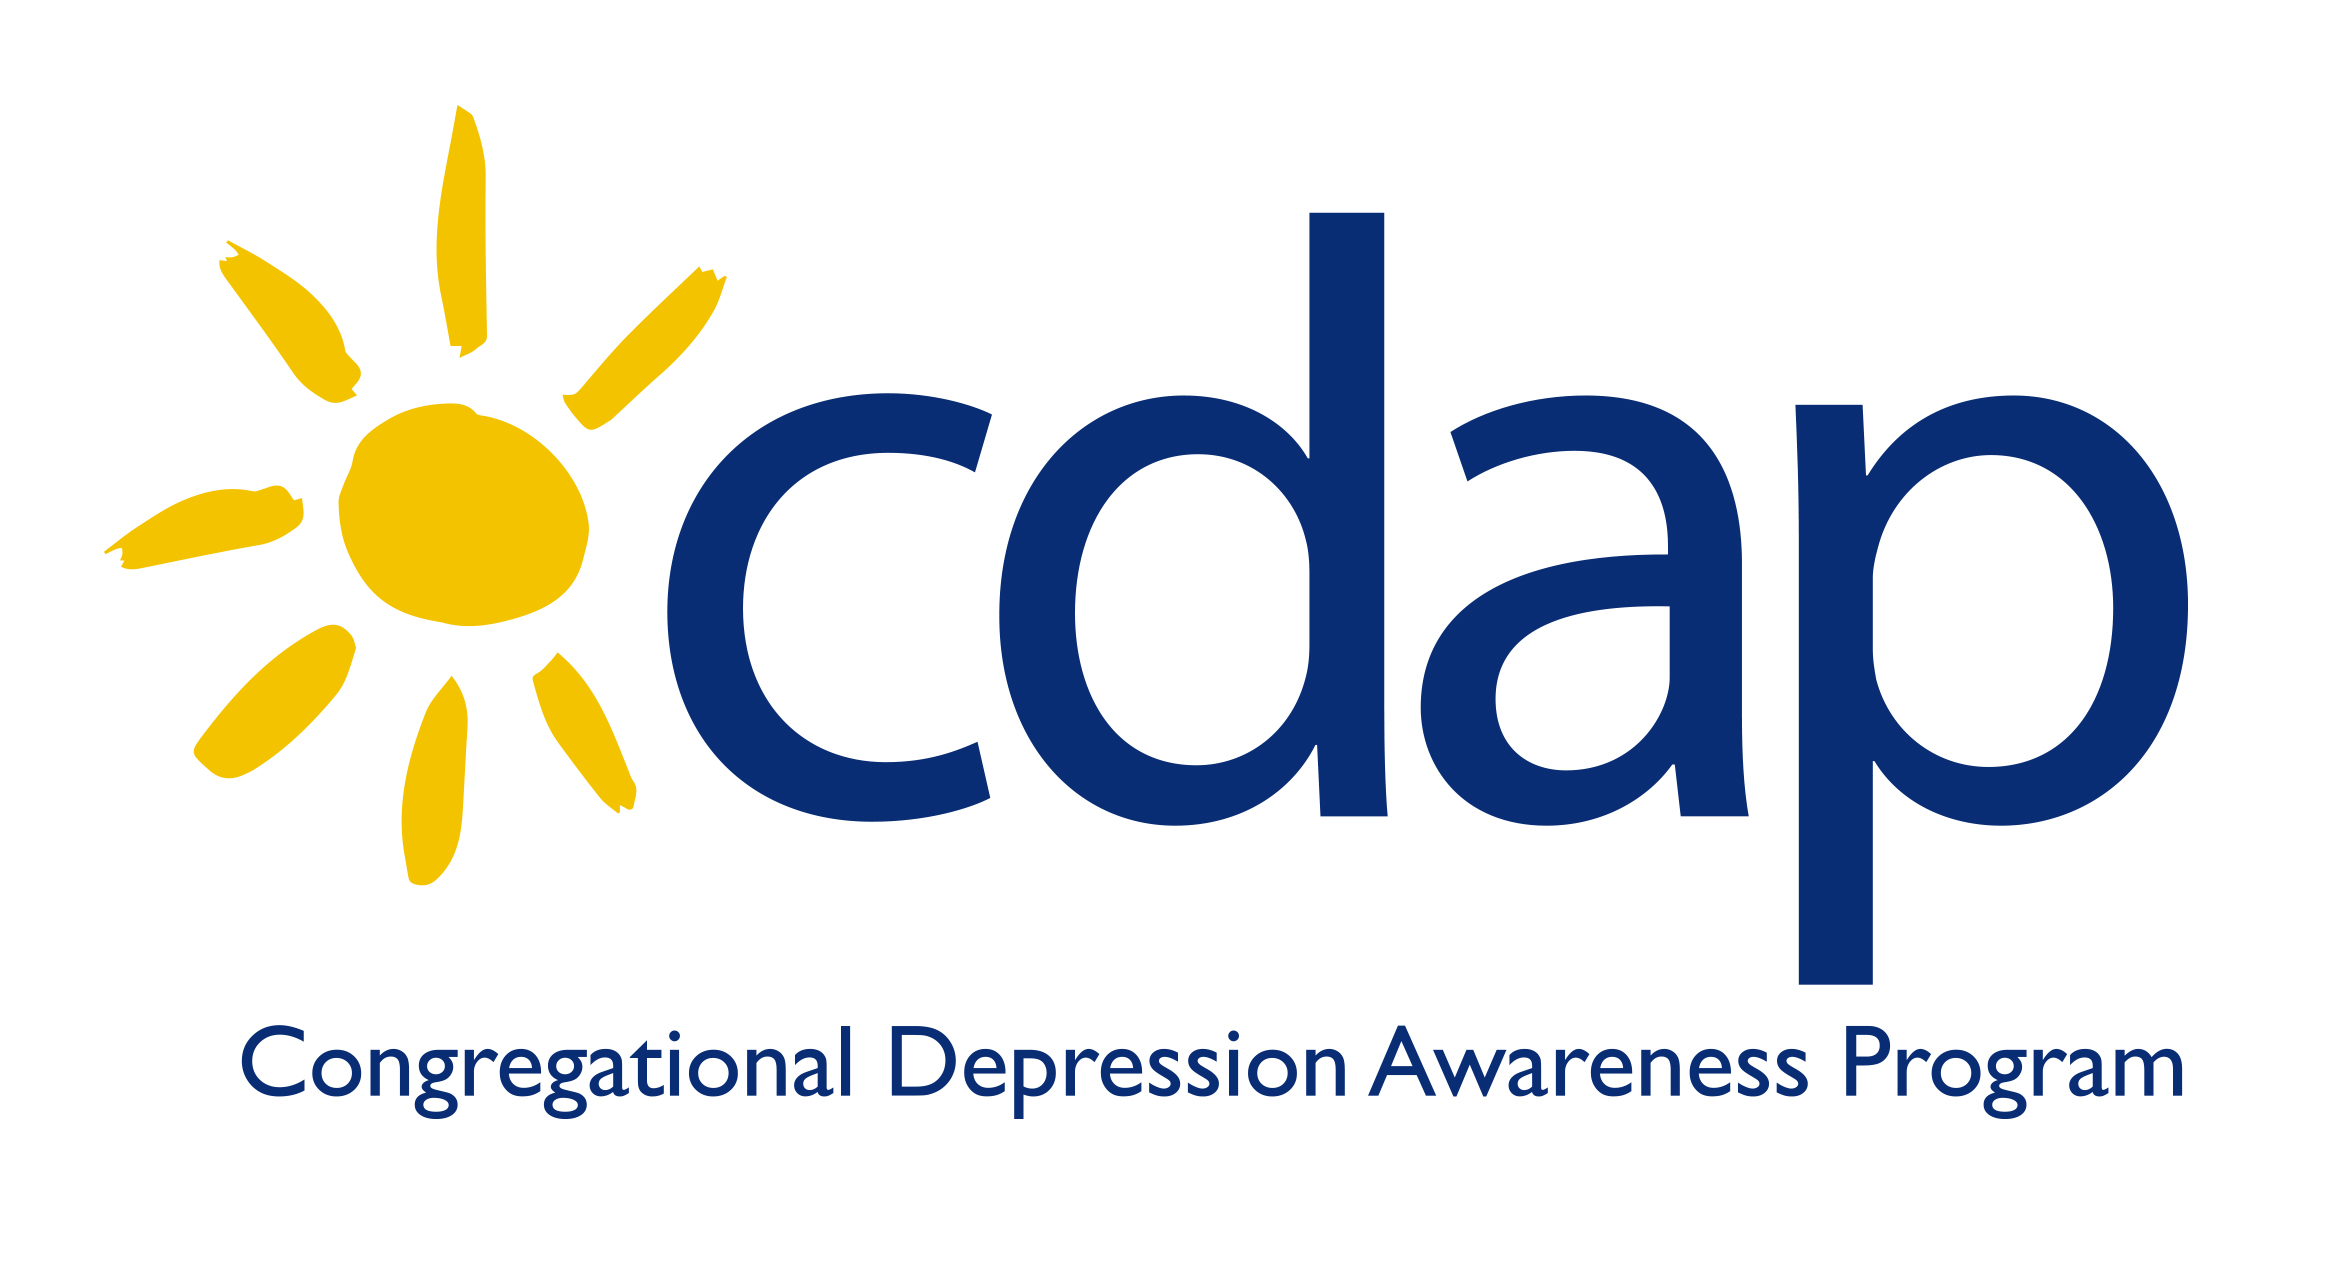 Congressional Depression Awareness Program logo